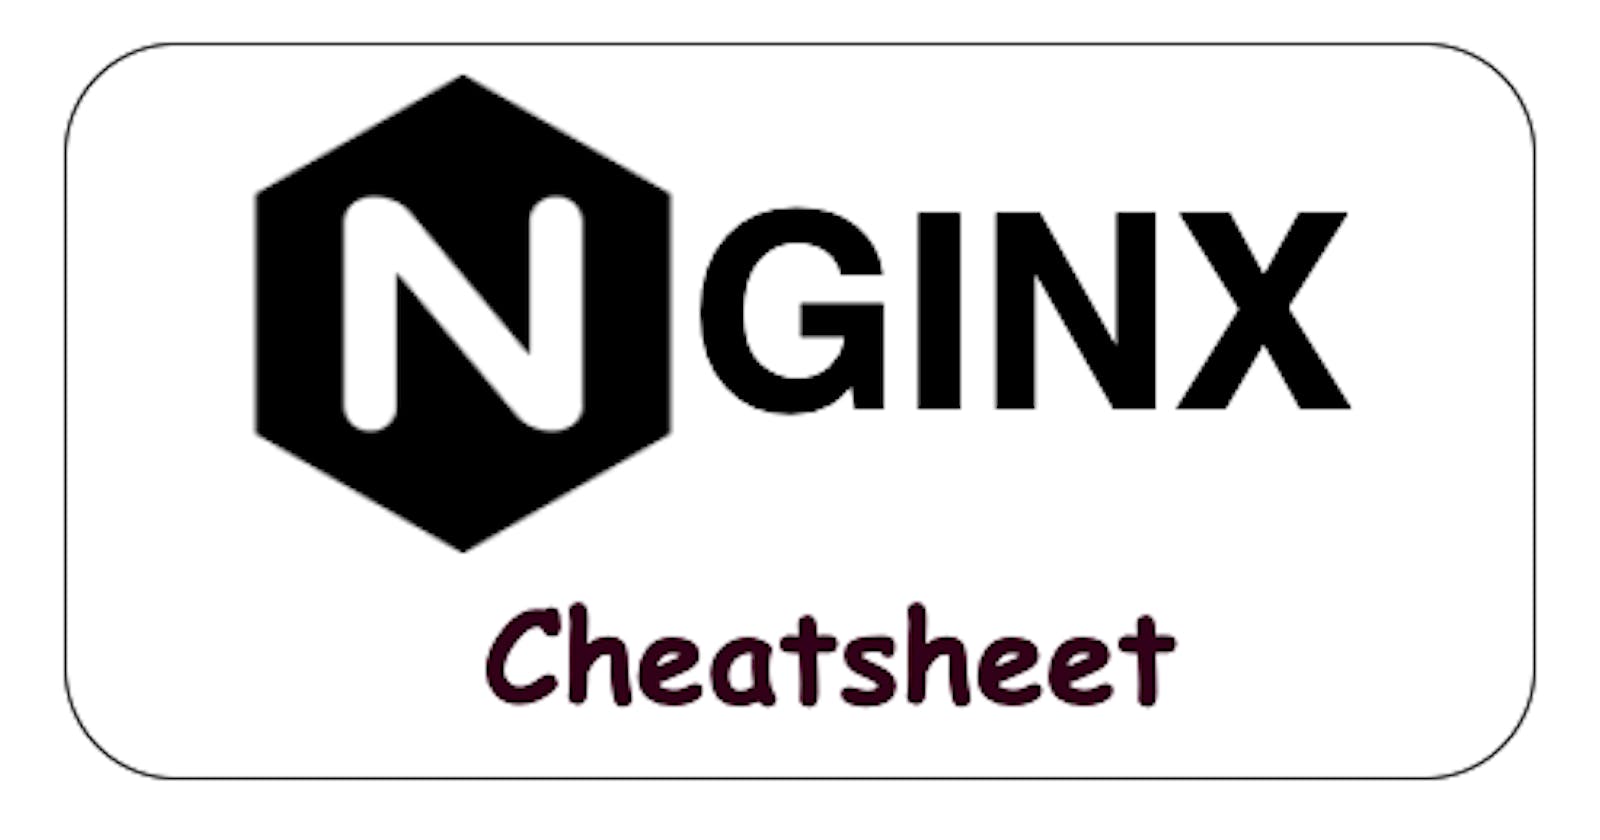 Nginx Cheatsheet